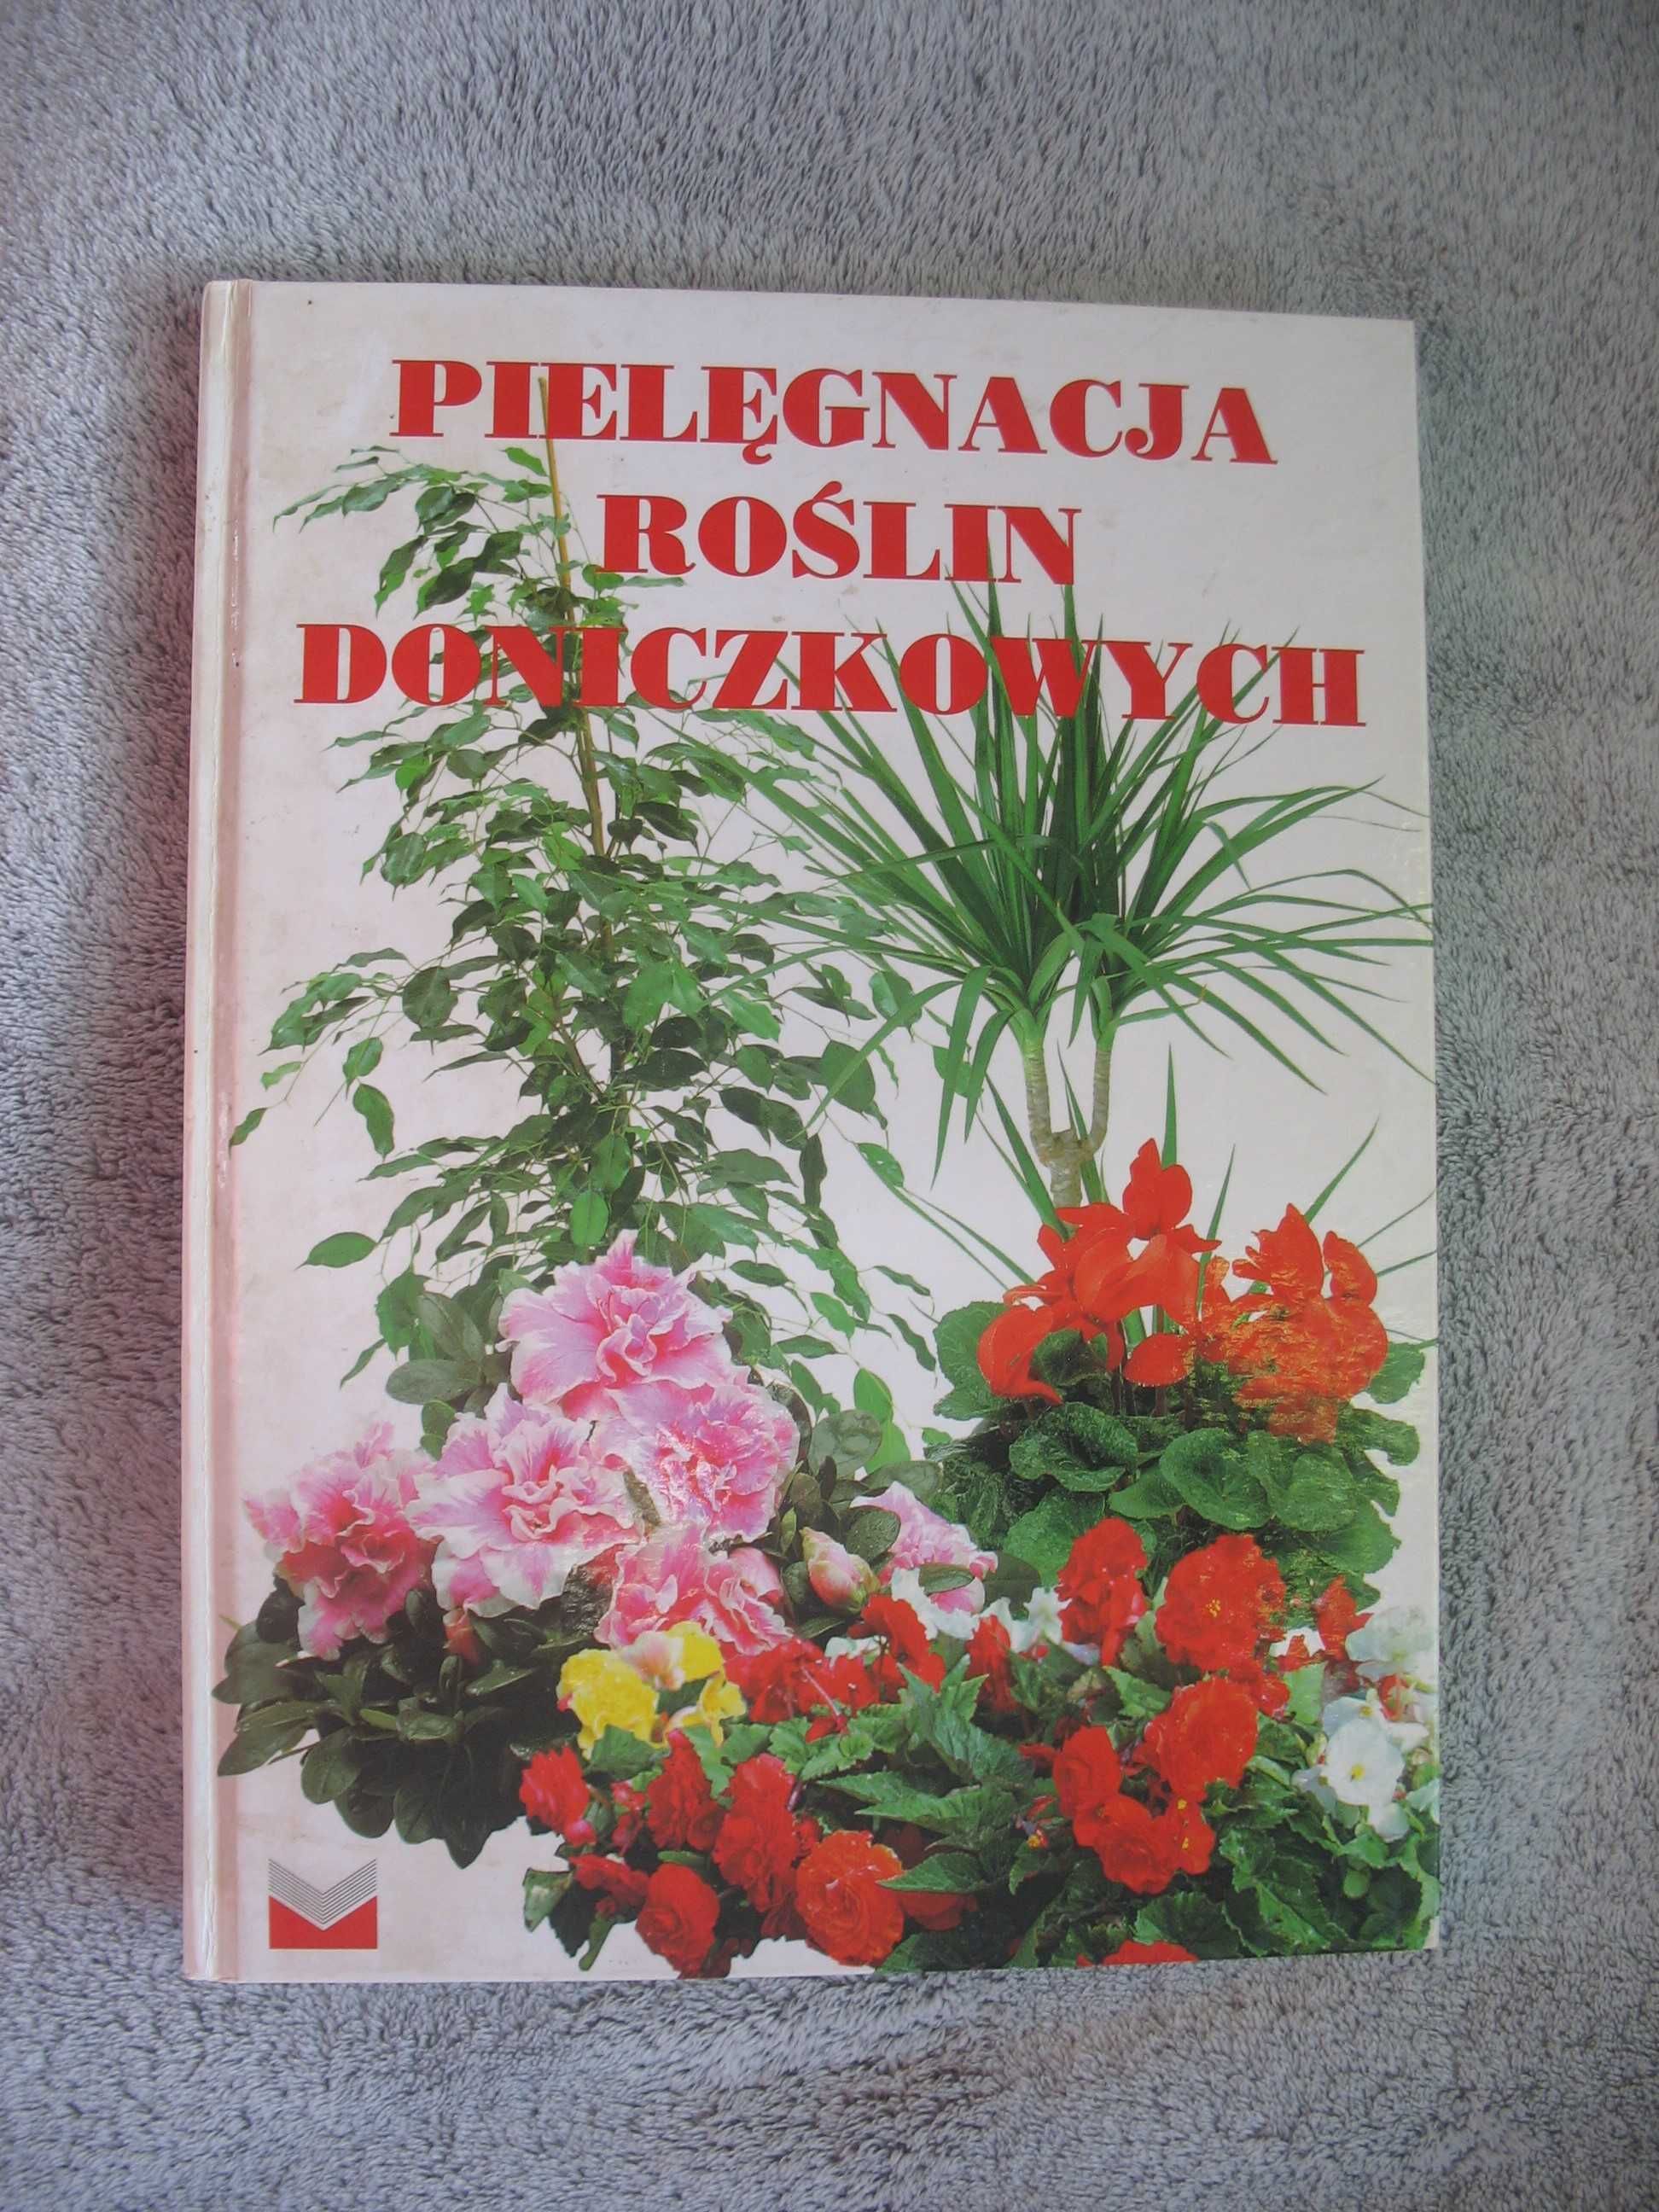 2 szt Wielka księga kwiatow, Pielegnacja roslin doniczkowych
34 zł